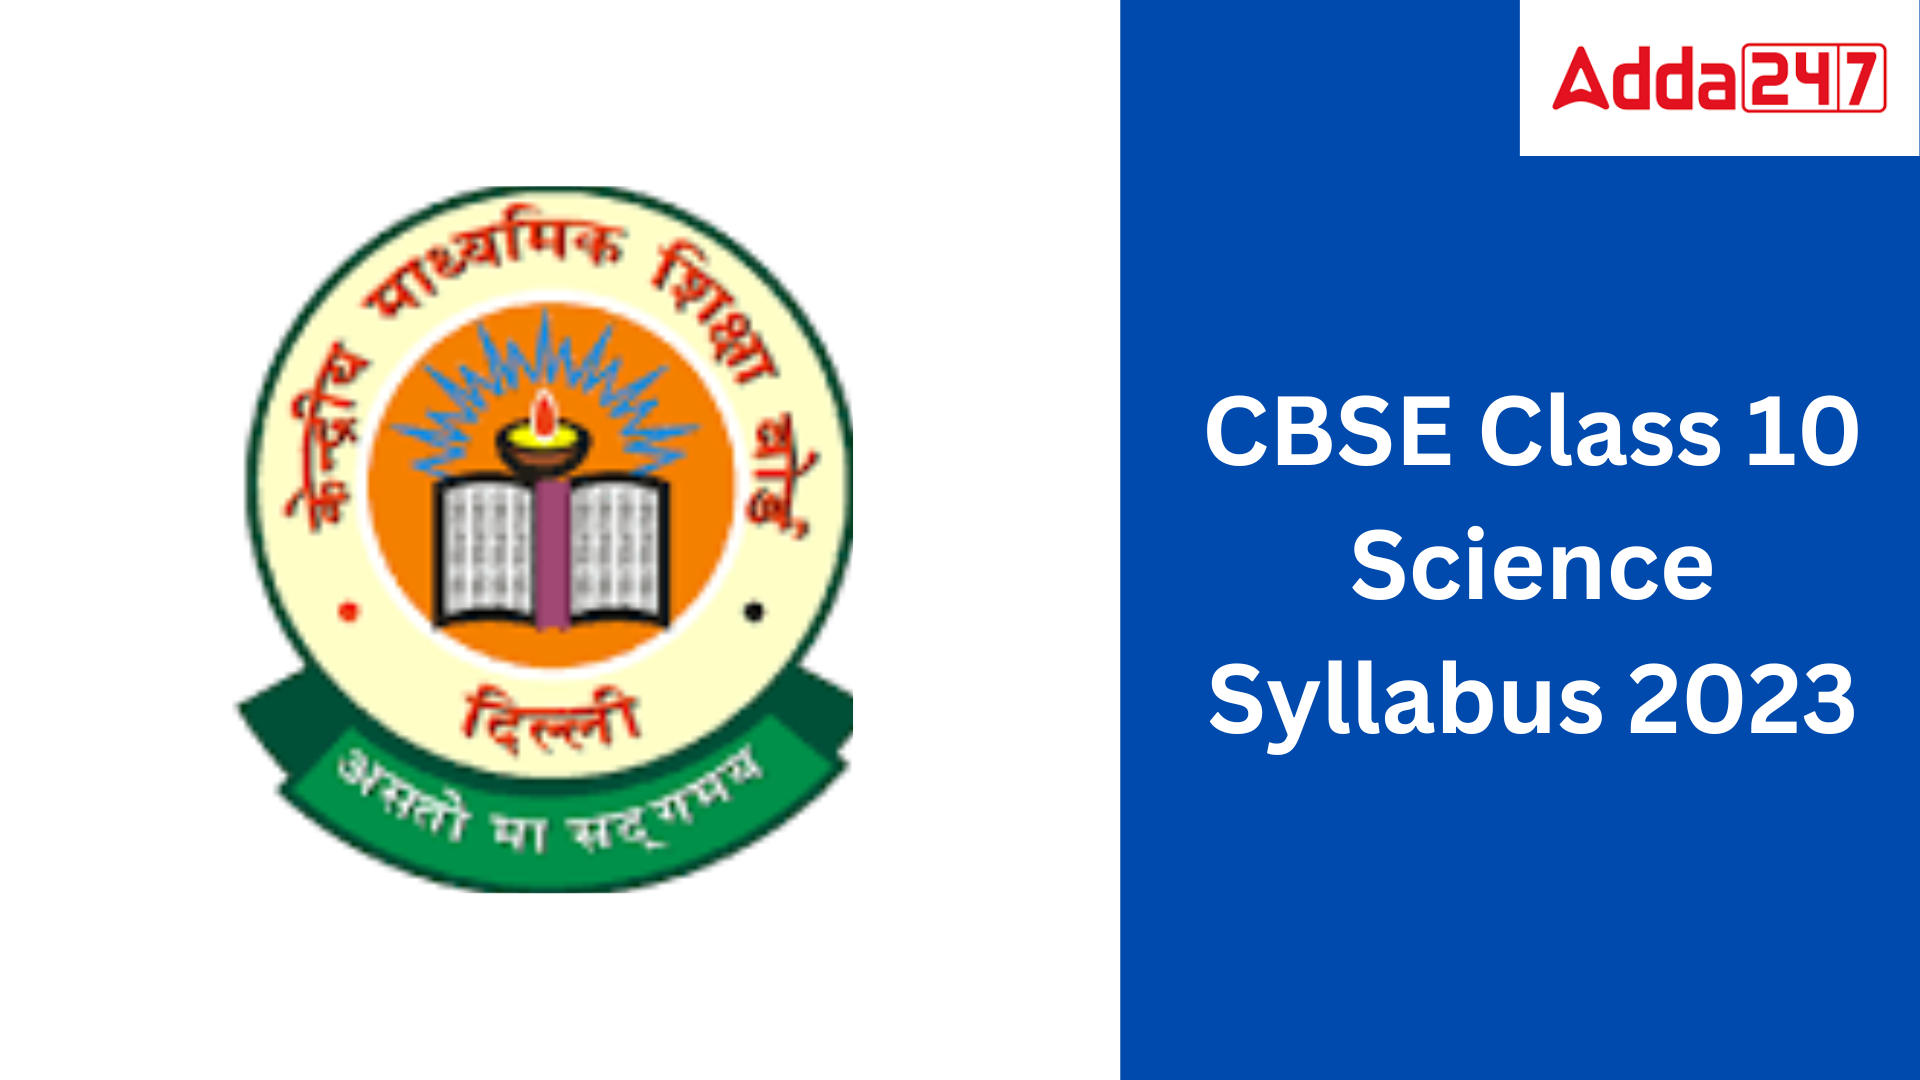 CBSE Class 10 science Syllabus 2023